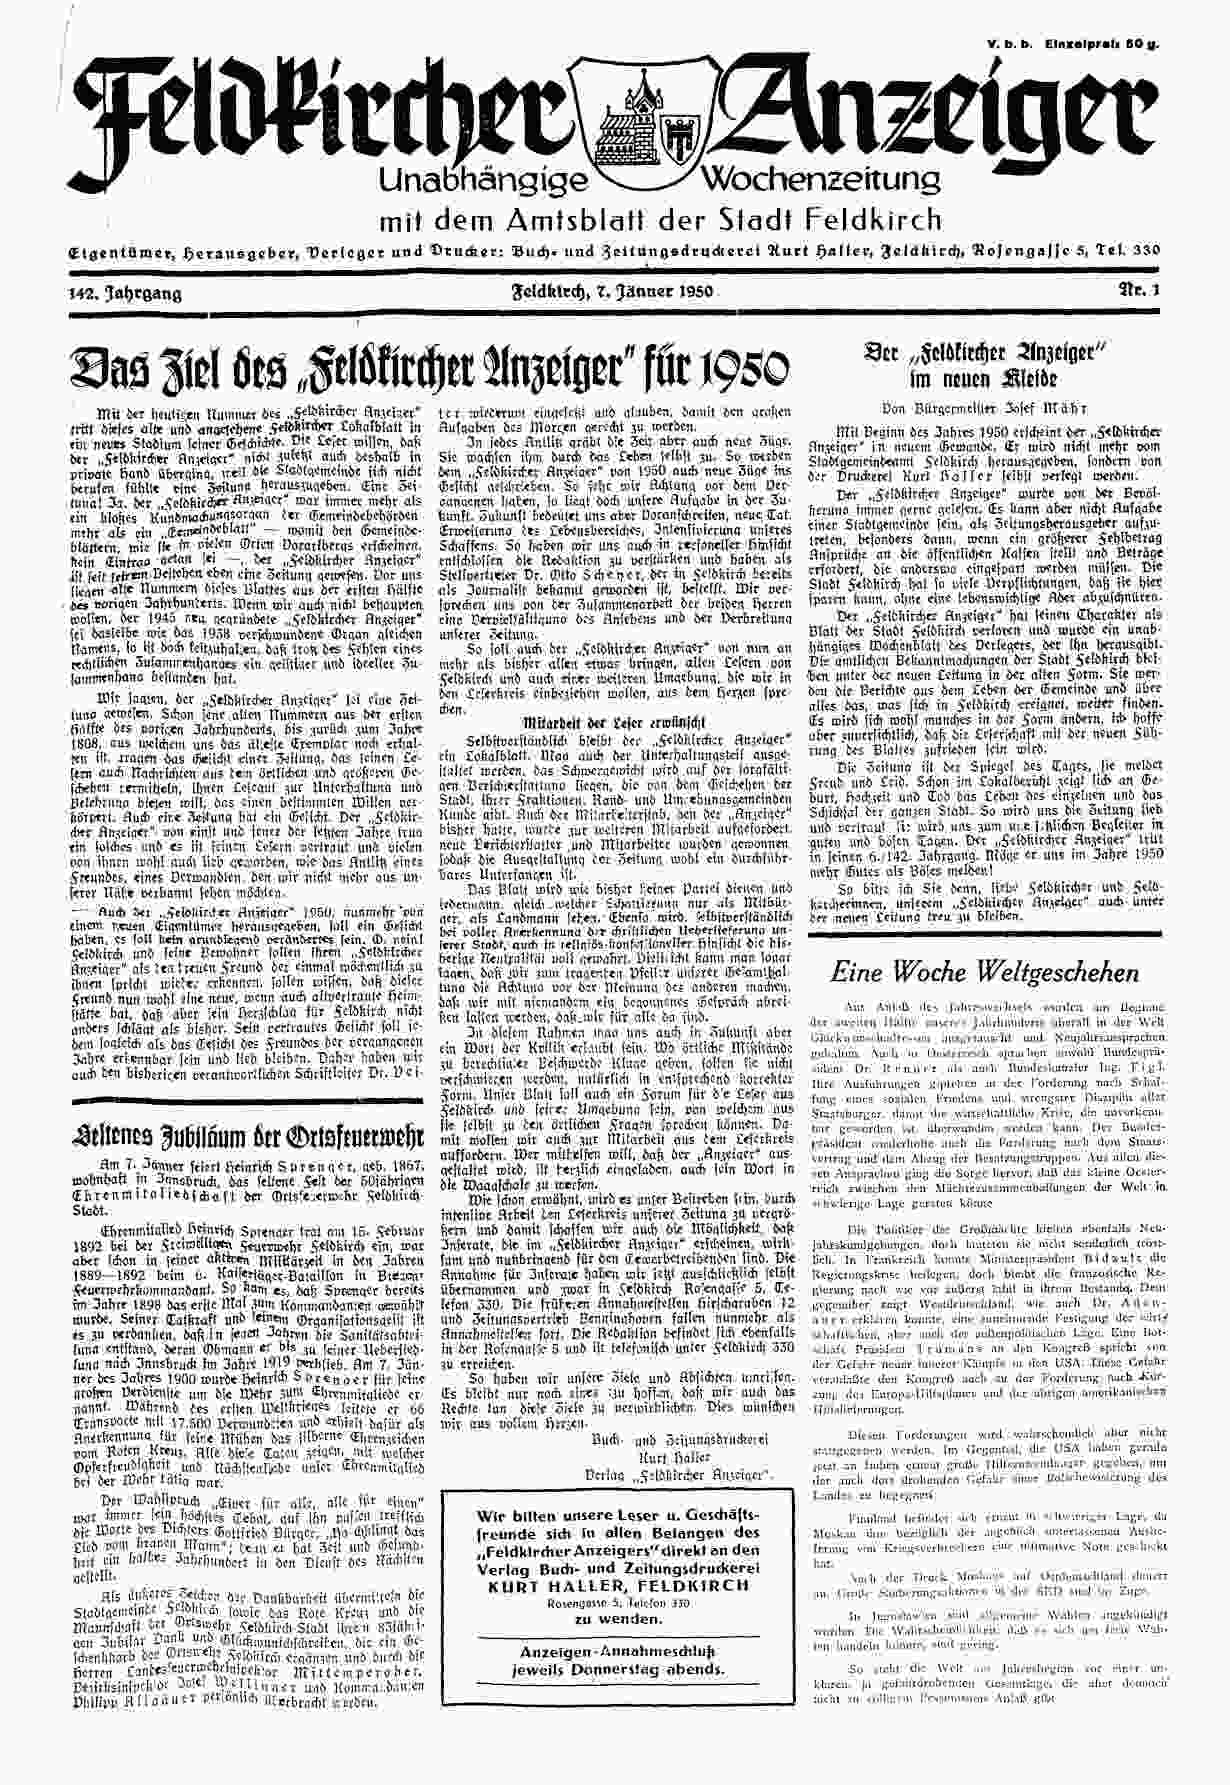 Feldkircher Anzeiger, 7.1.1950, S.1. ANNO/ÖNB